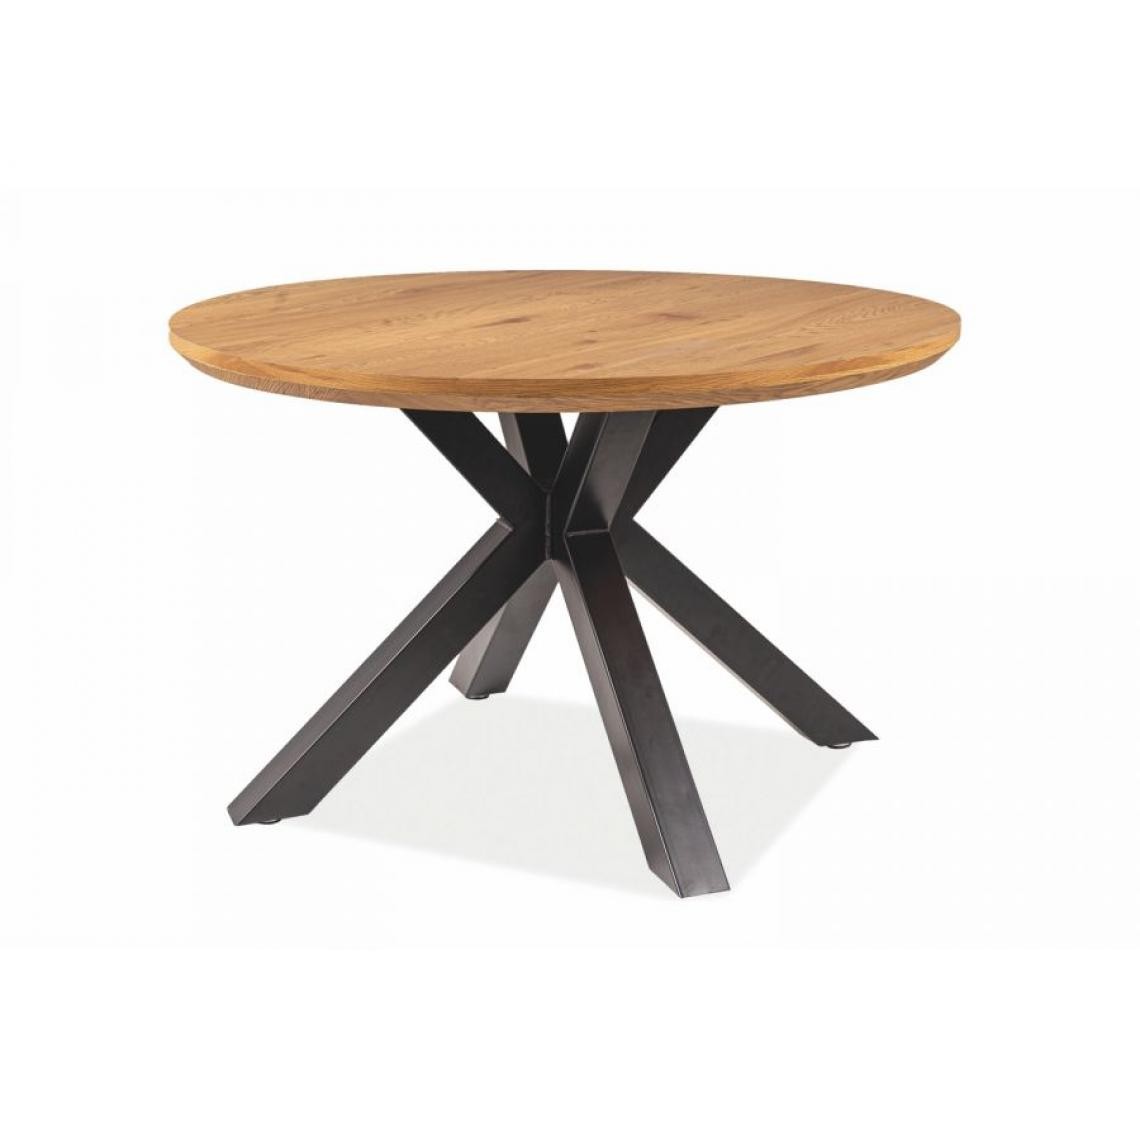 Hucoco - RETMO - Table ronde avec un piètement moderne - 120x120x75 cm - Plateau en panneau plaqué - Piètement en métal - Chêne - Tables à manger